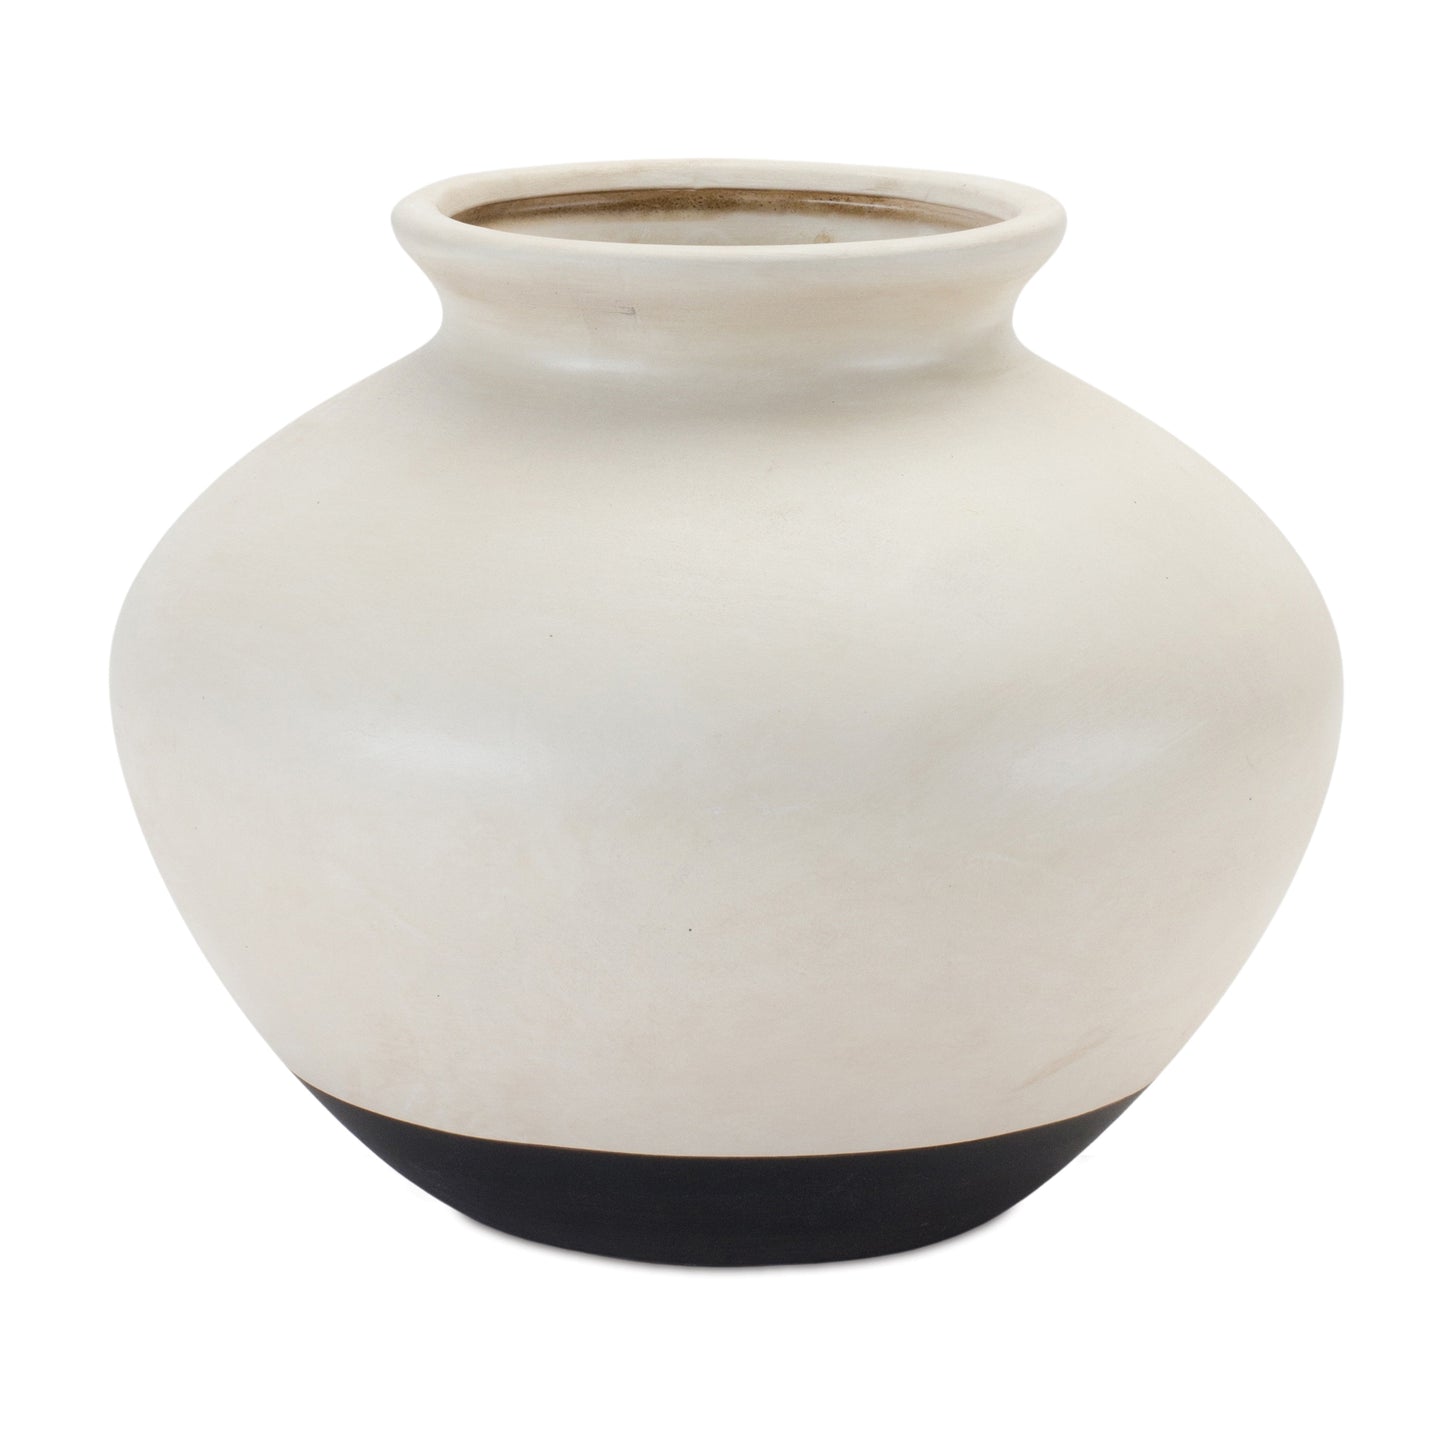 Two Tone Ceramic Vase 9"D